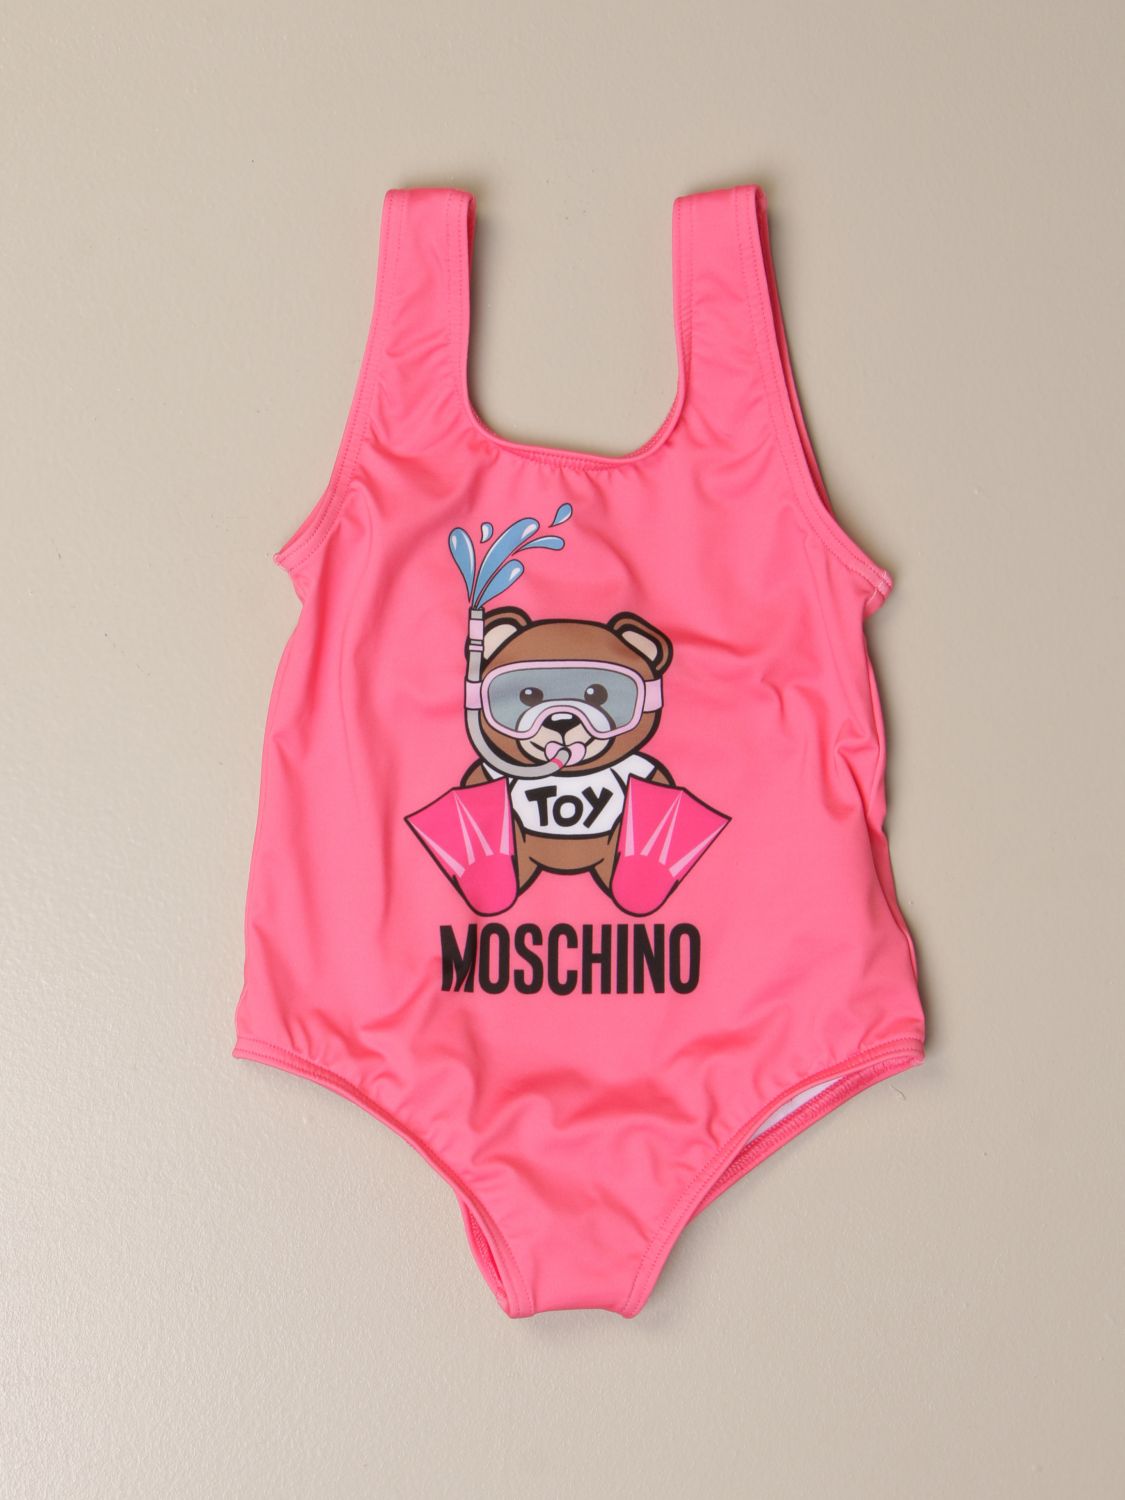 moschino baby swimsuit